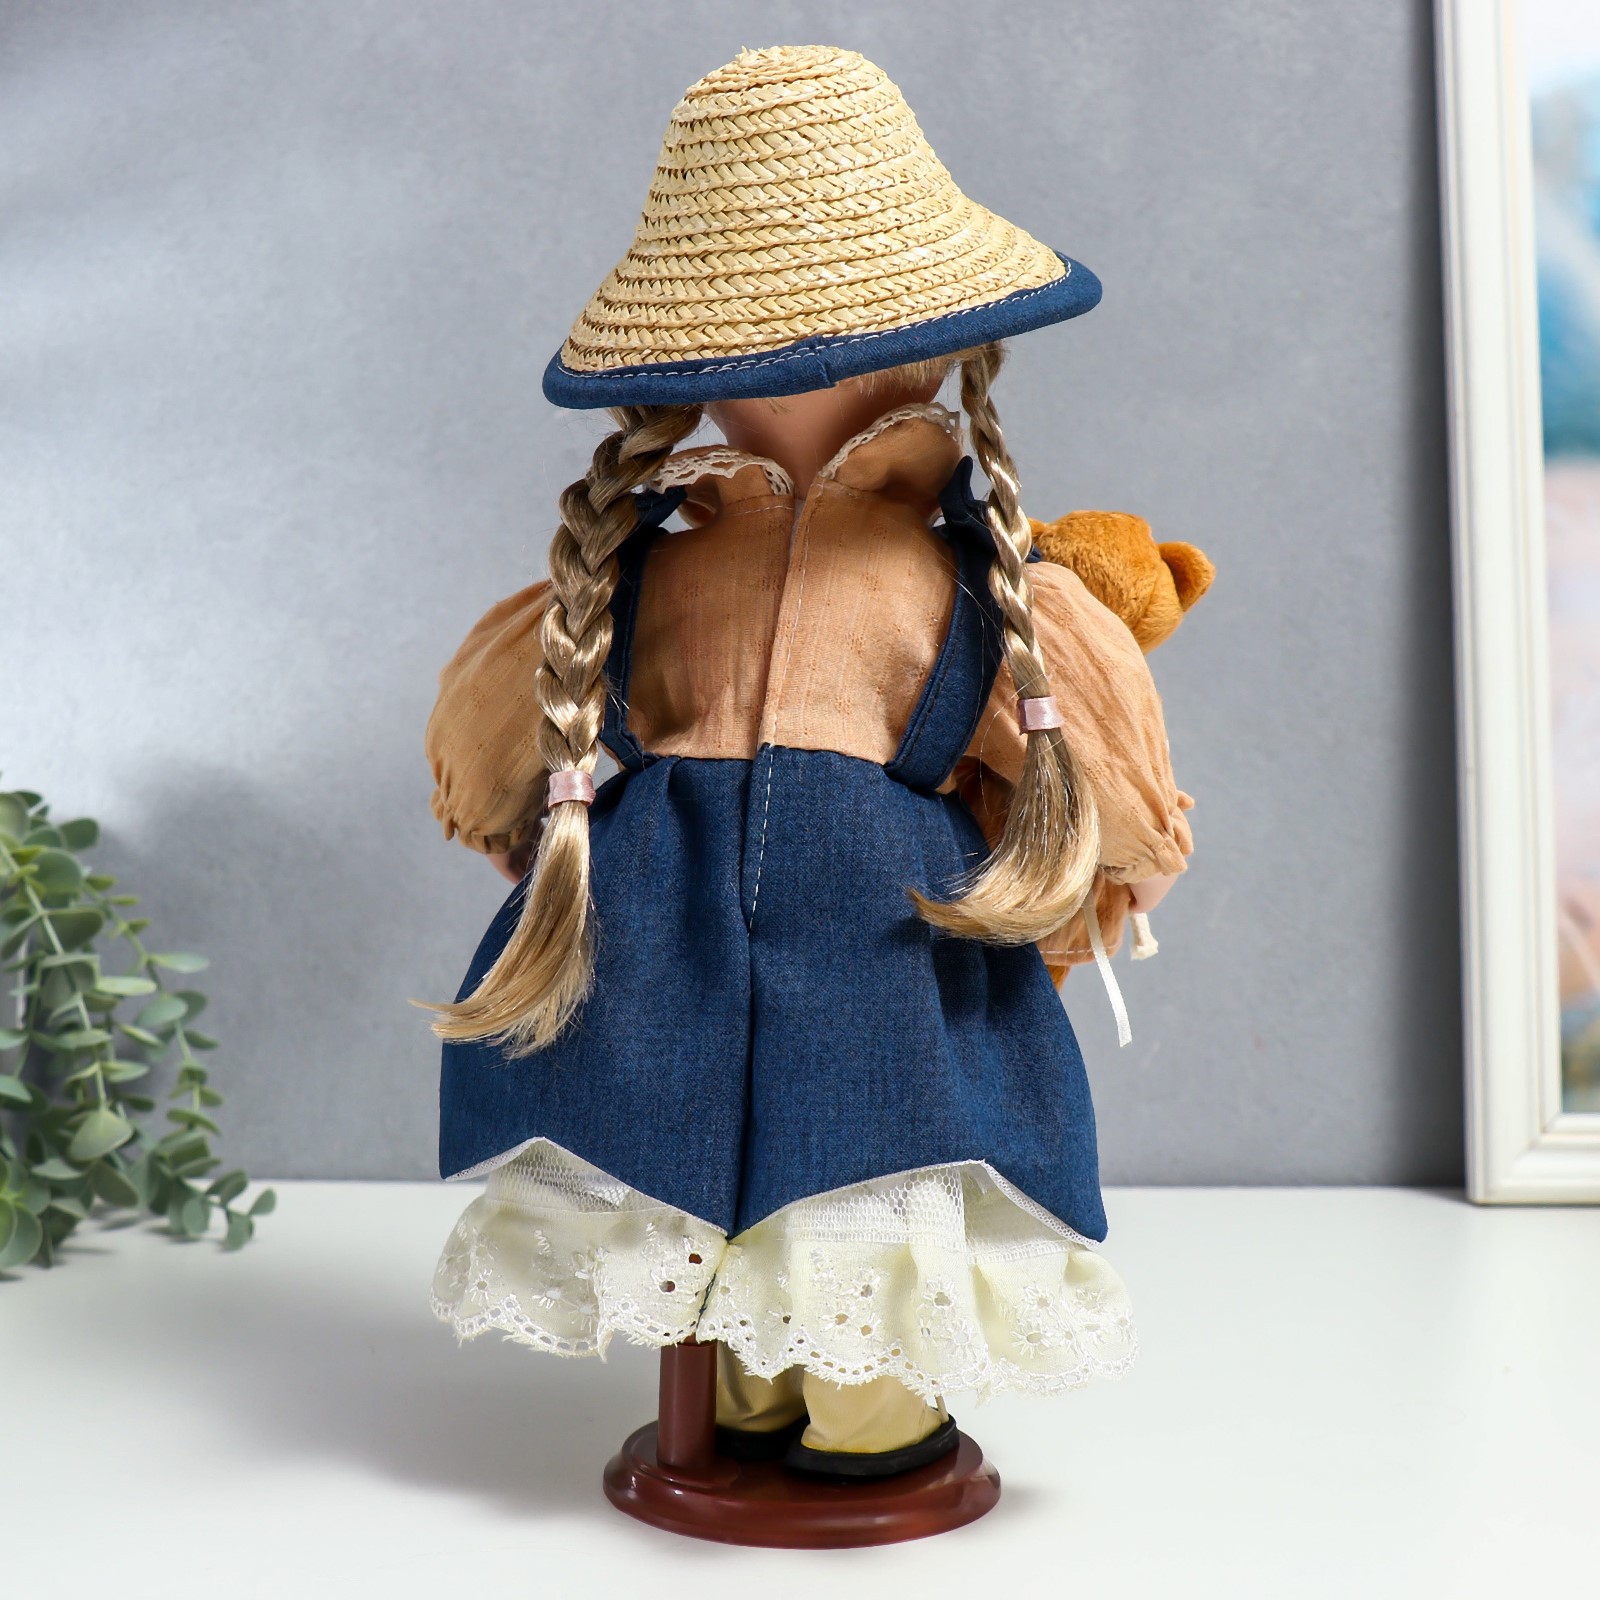 Кукла коллекционная Зимнее волшебство керамика «Сьюзи в джинсовом платье шляпке и с мишкой» 30 см - фото 4